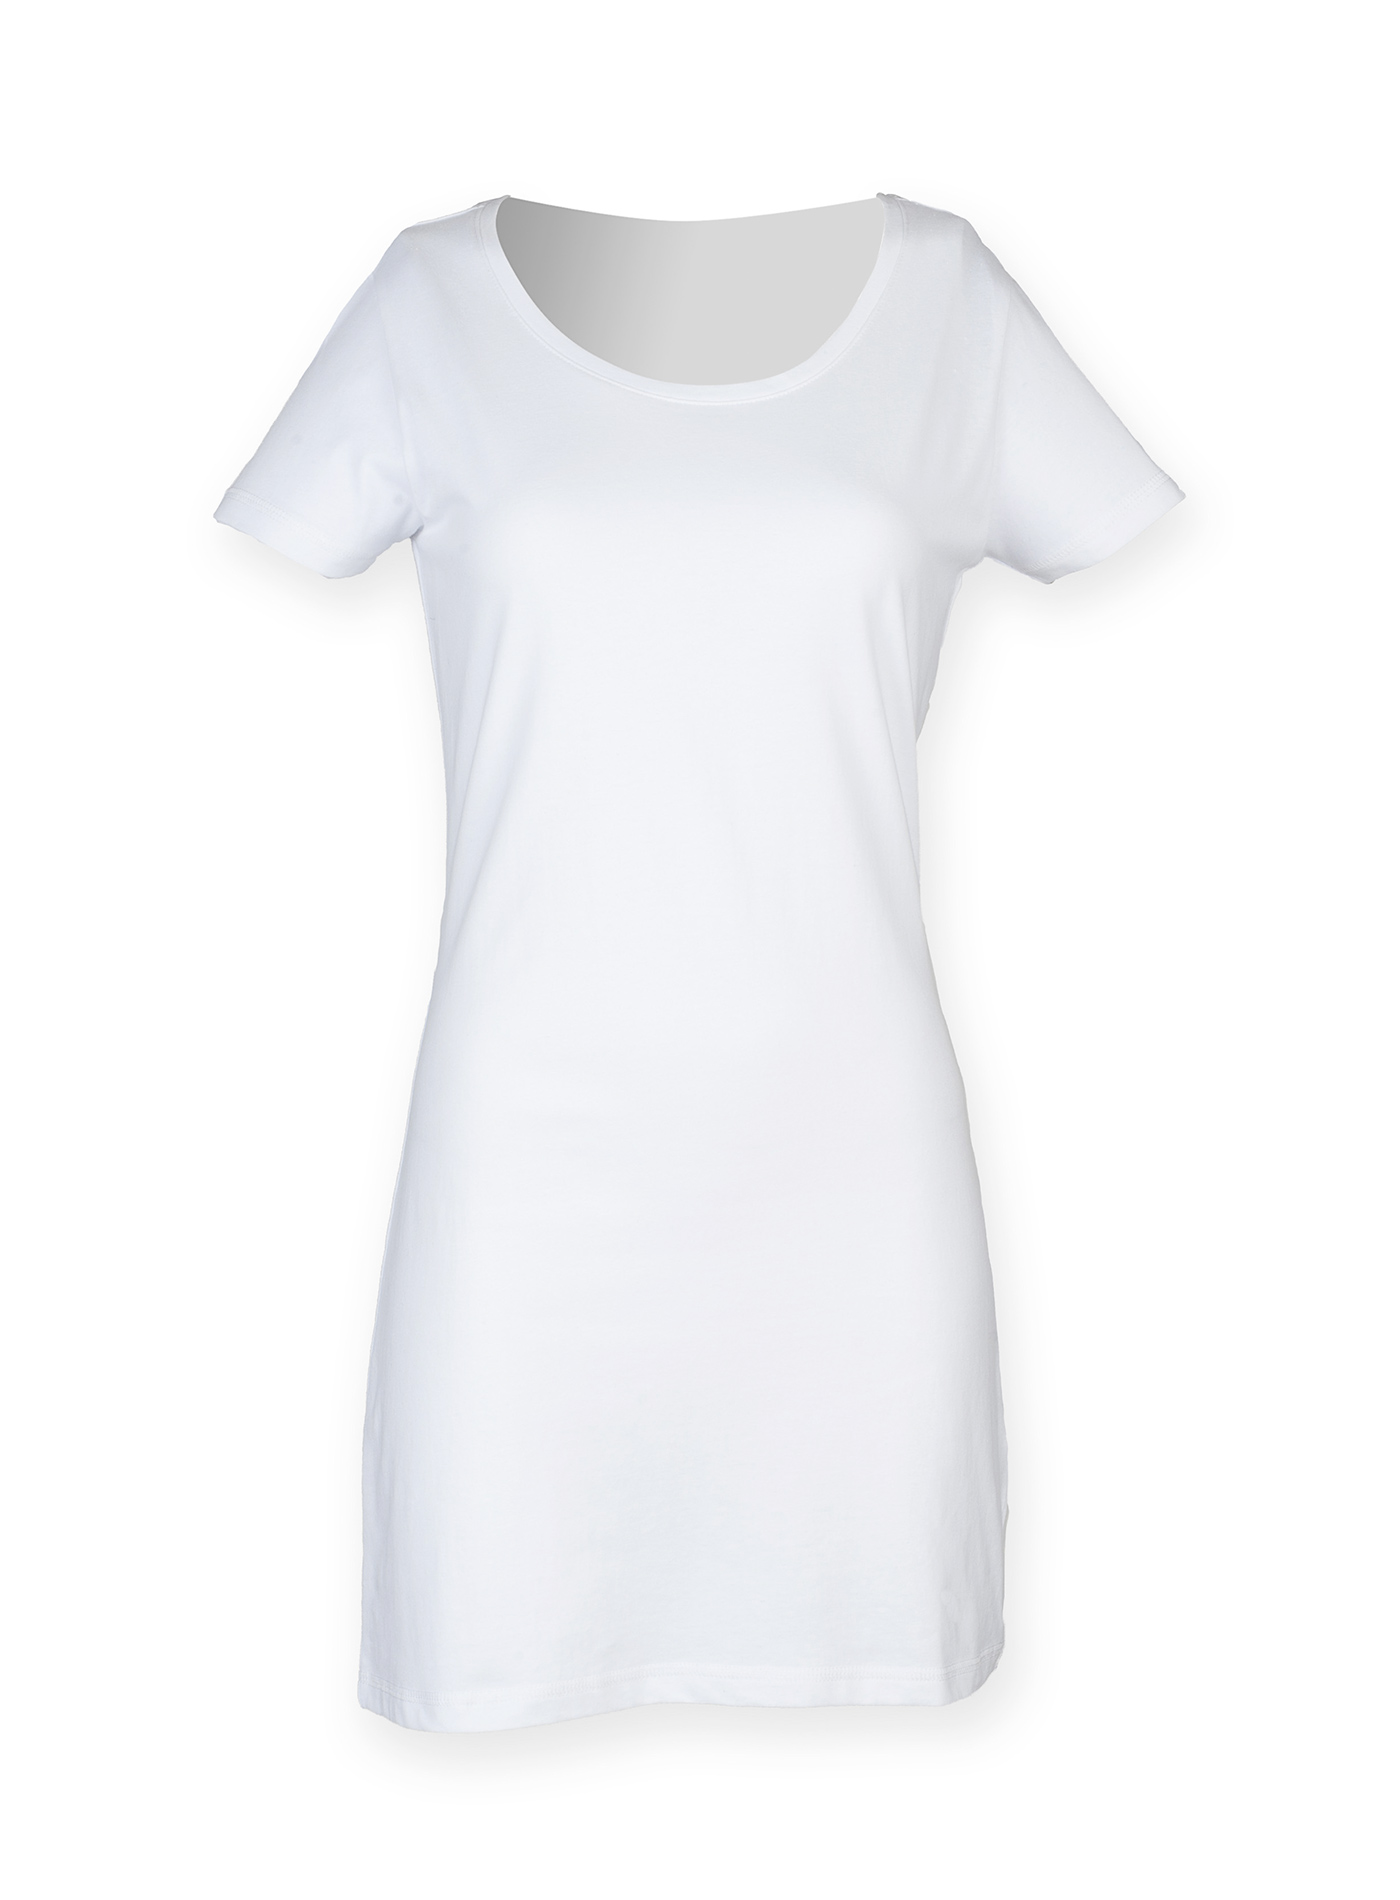 Dámské tričkové šaty Skinnifit - Bílá M